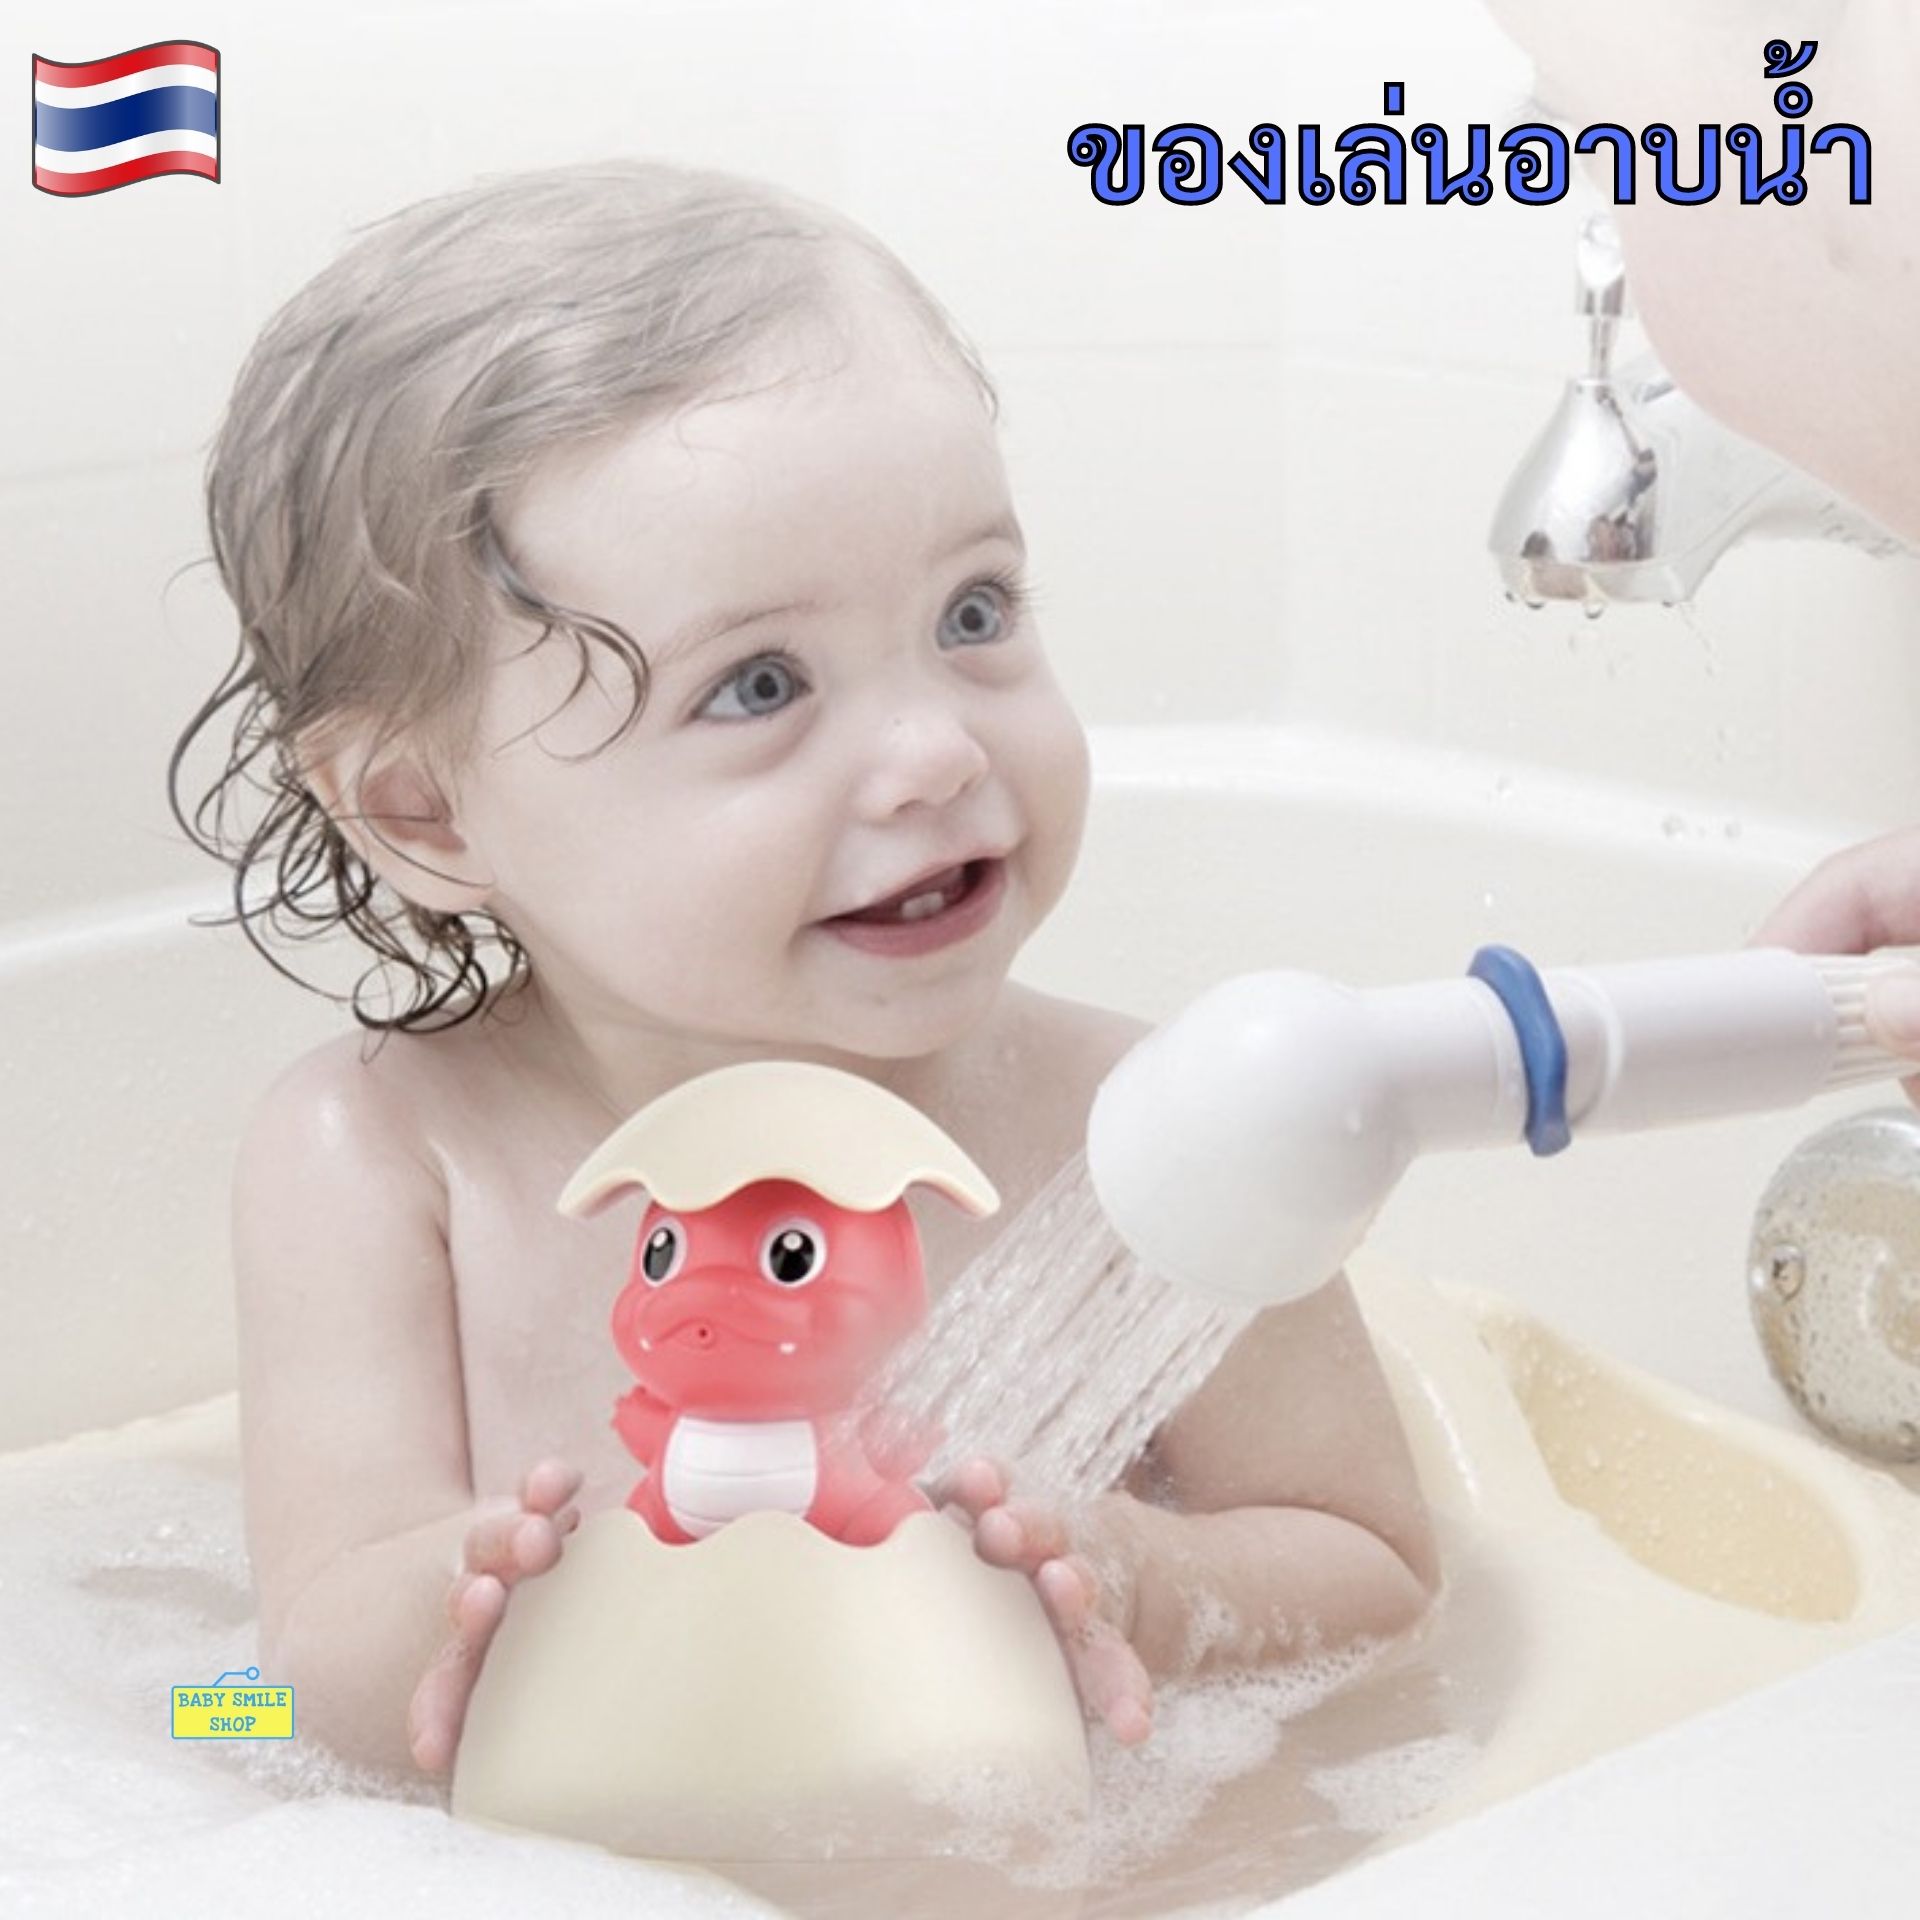 ? ของเล่นพ่นน้ำ Bath Toys ของเล่นอาบน้ำ ของเล่นในห้องน้ำ ของเล่นอาบน้ำเด็ก ของเล่นเด็กอาบน้ำ ของเล่นเด็ก Baby Bathtub Toys B673